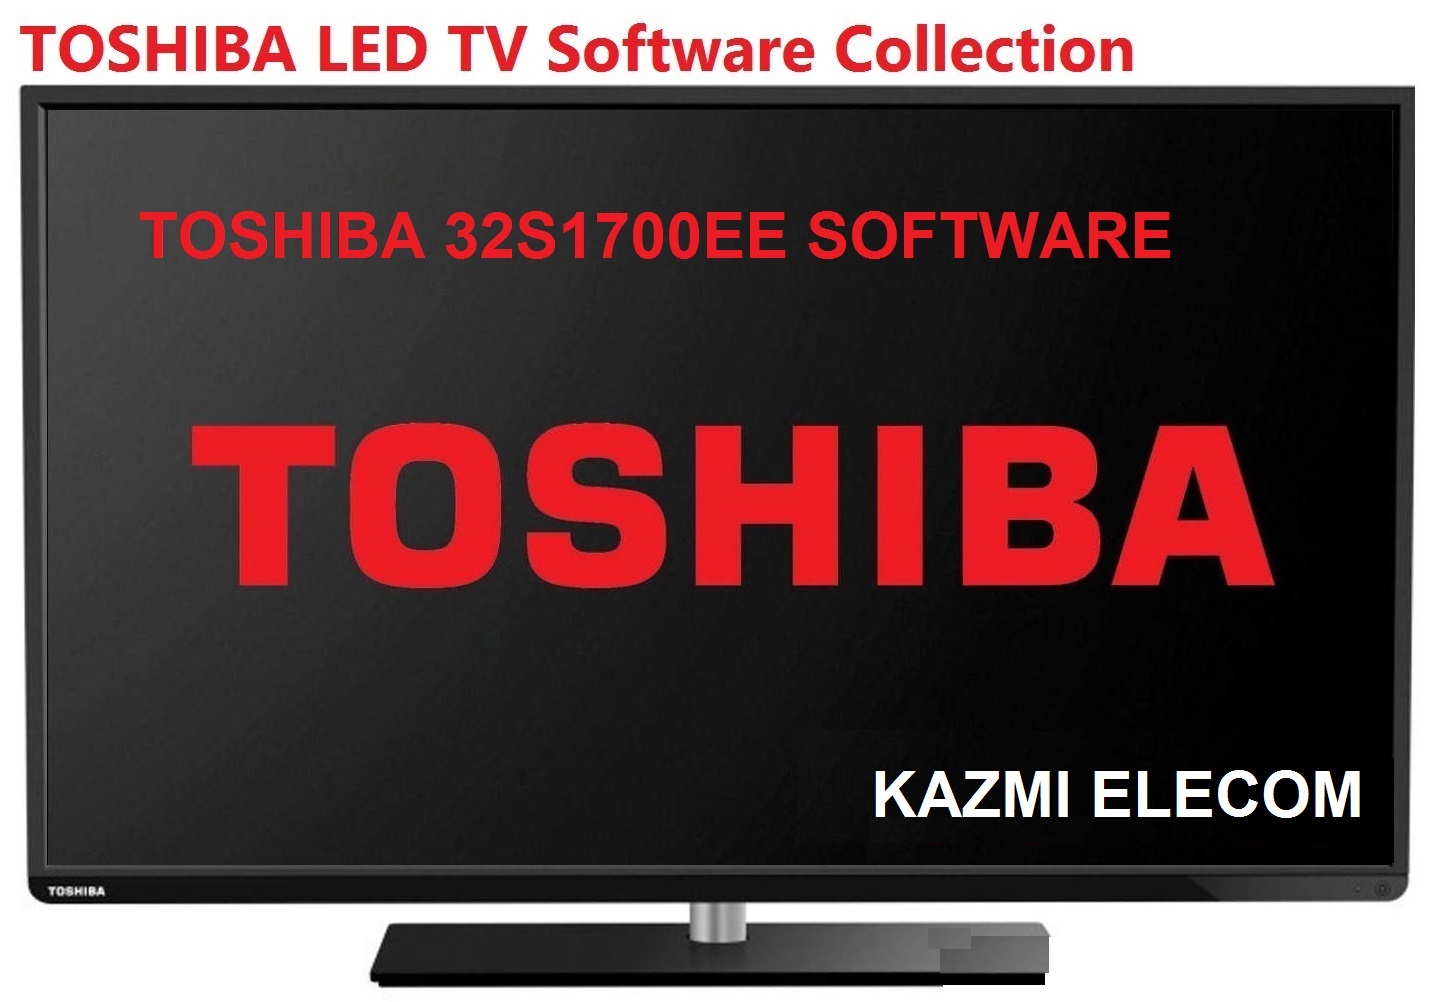 Toshiba 32S1700Ee